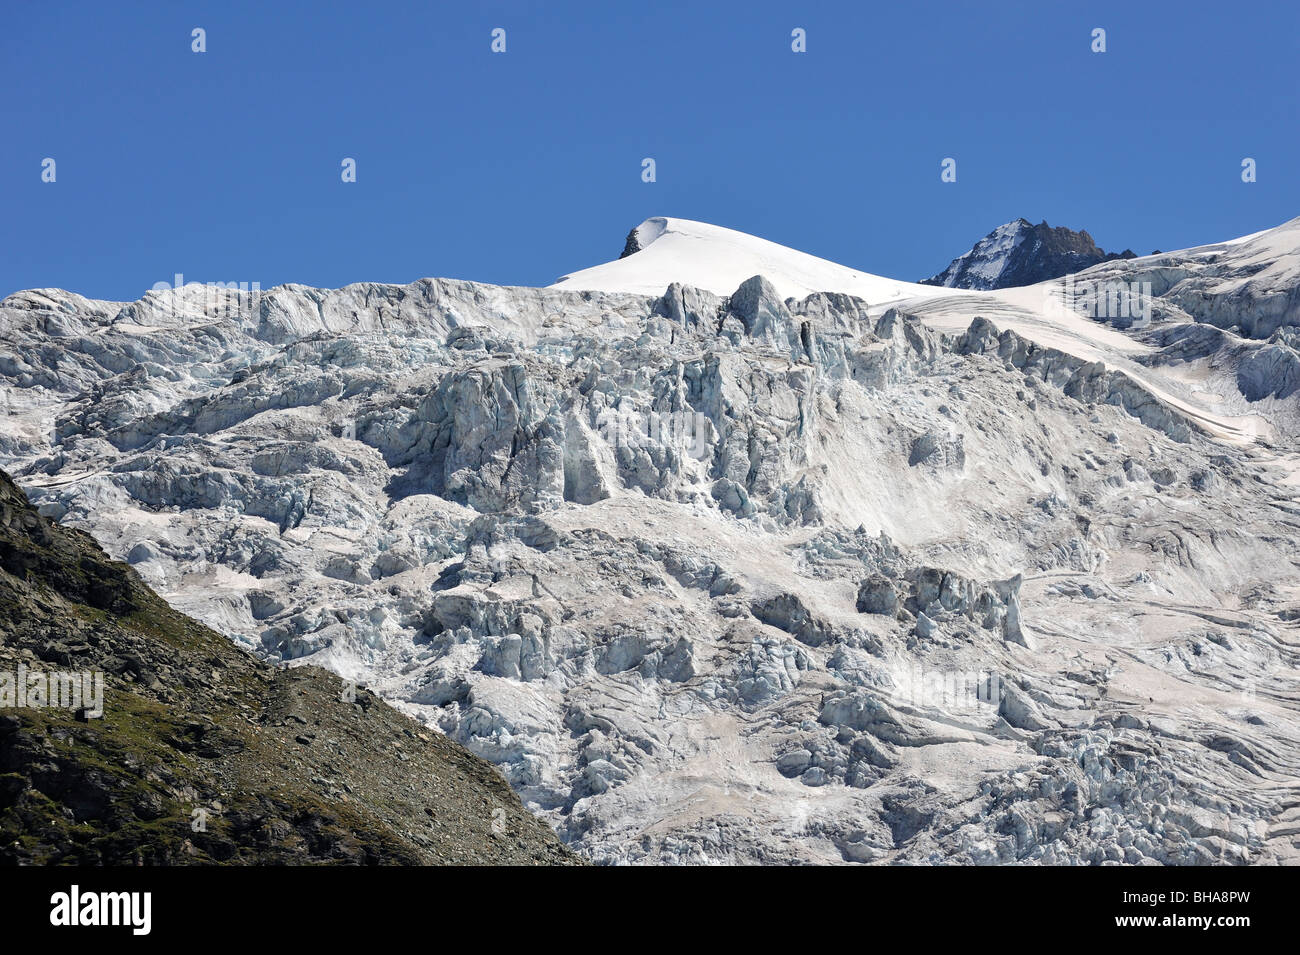 Séracs du glacier sur la montagne Suisse Grand cornier dans les Alpes Pennines / Walliser Alpen, Valais / Wallis (Suisse) Banque D'Images